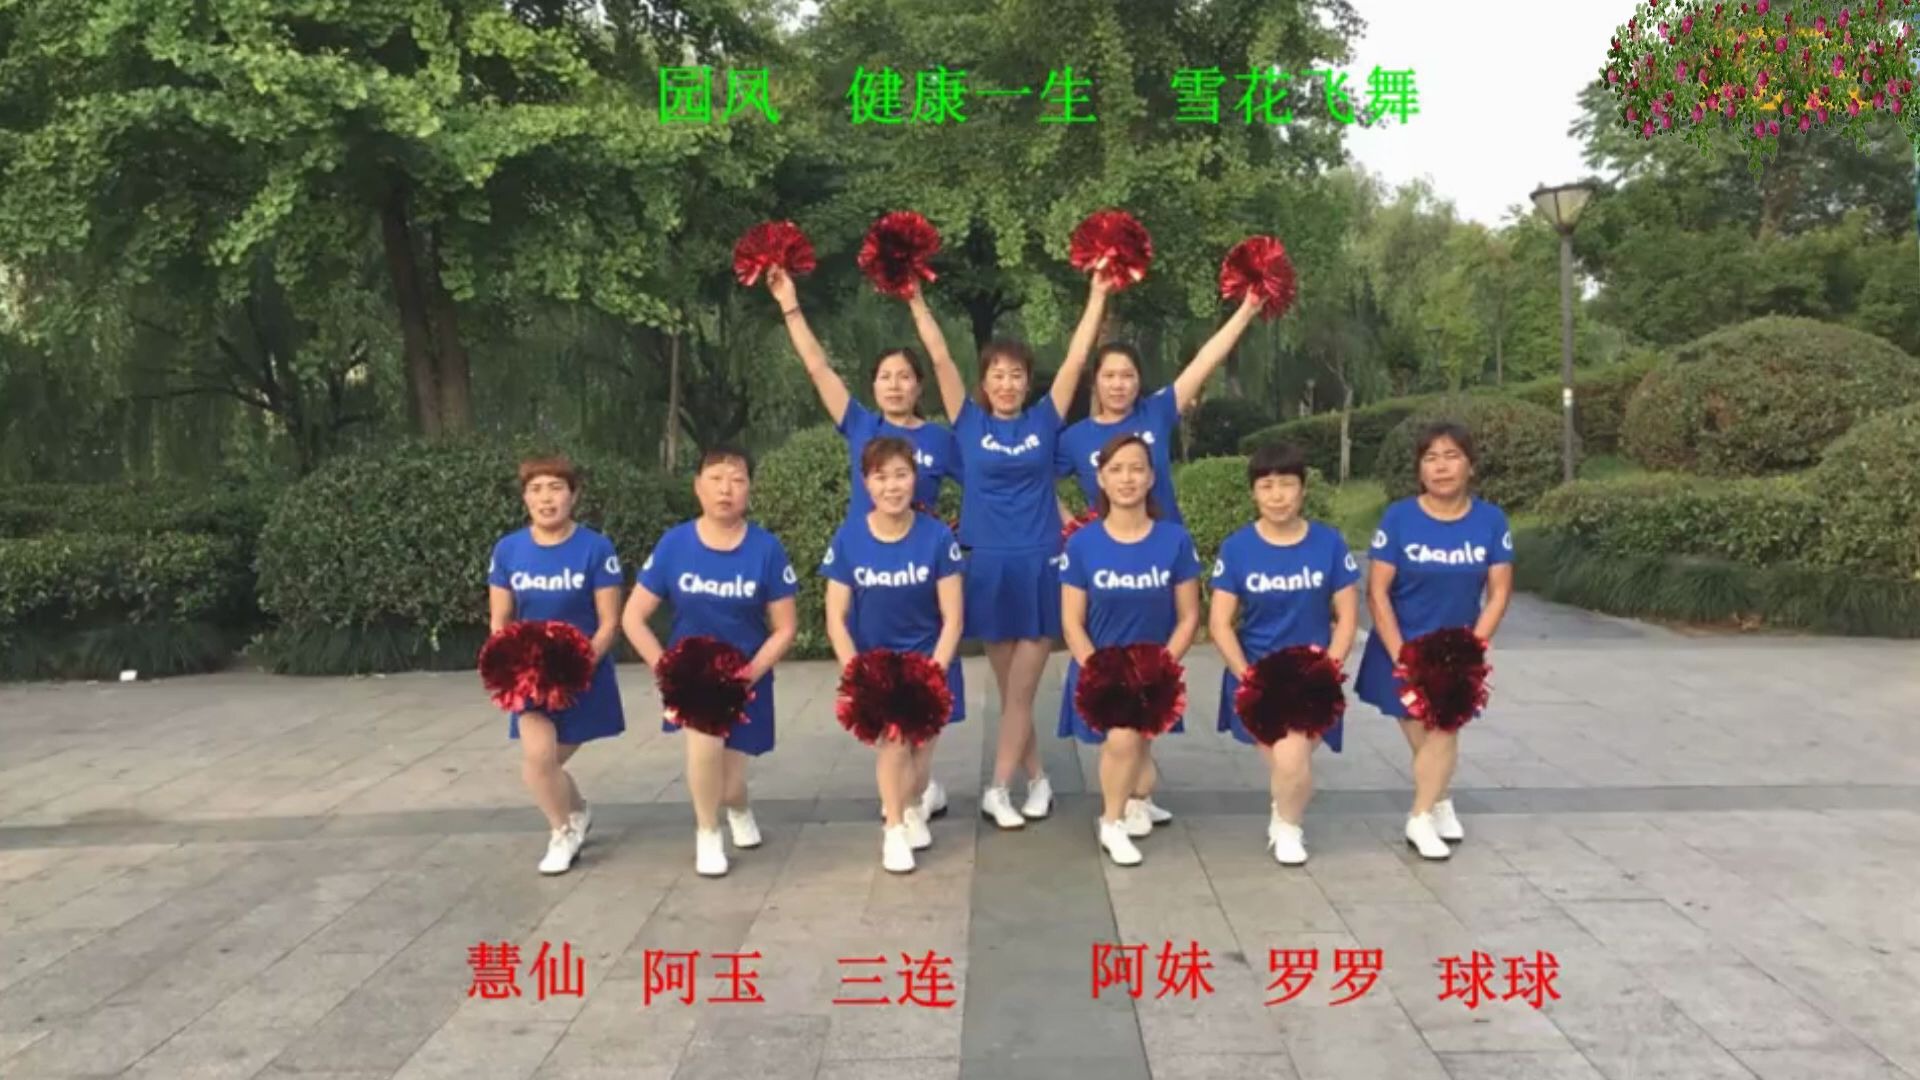 9人队形花球舞中国歌最美适合文艺汇演开场舞演示健康一生舞队